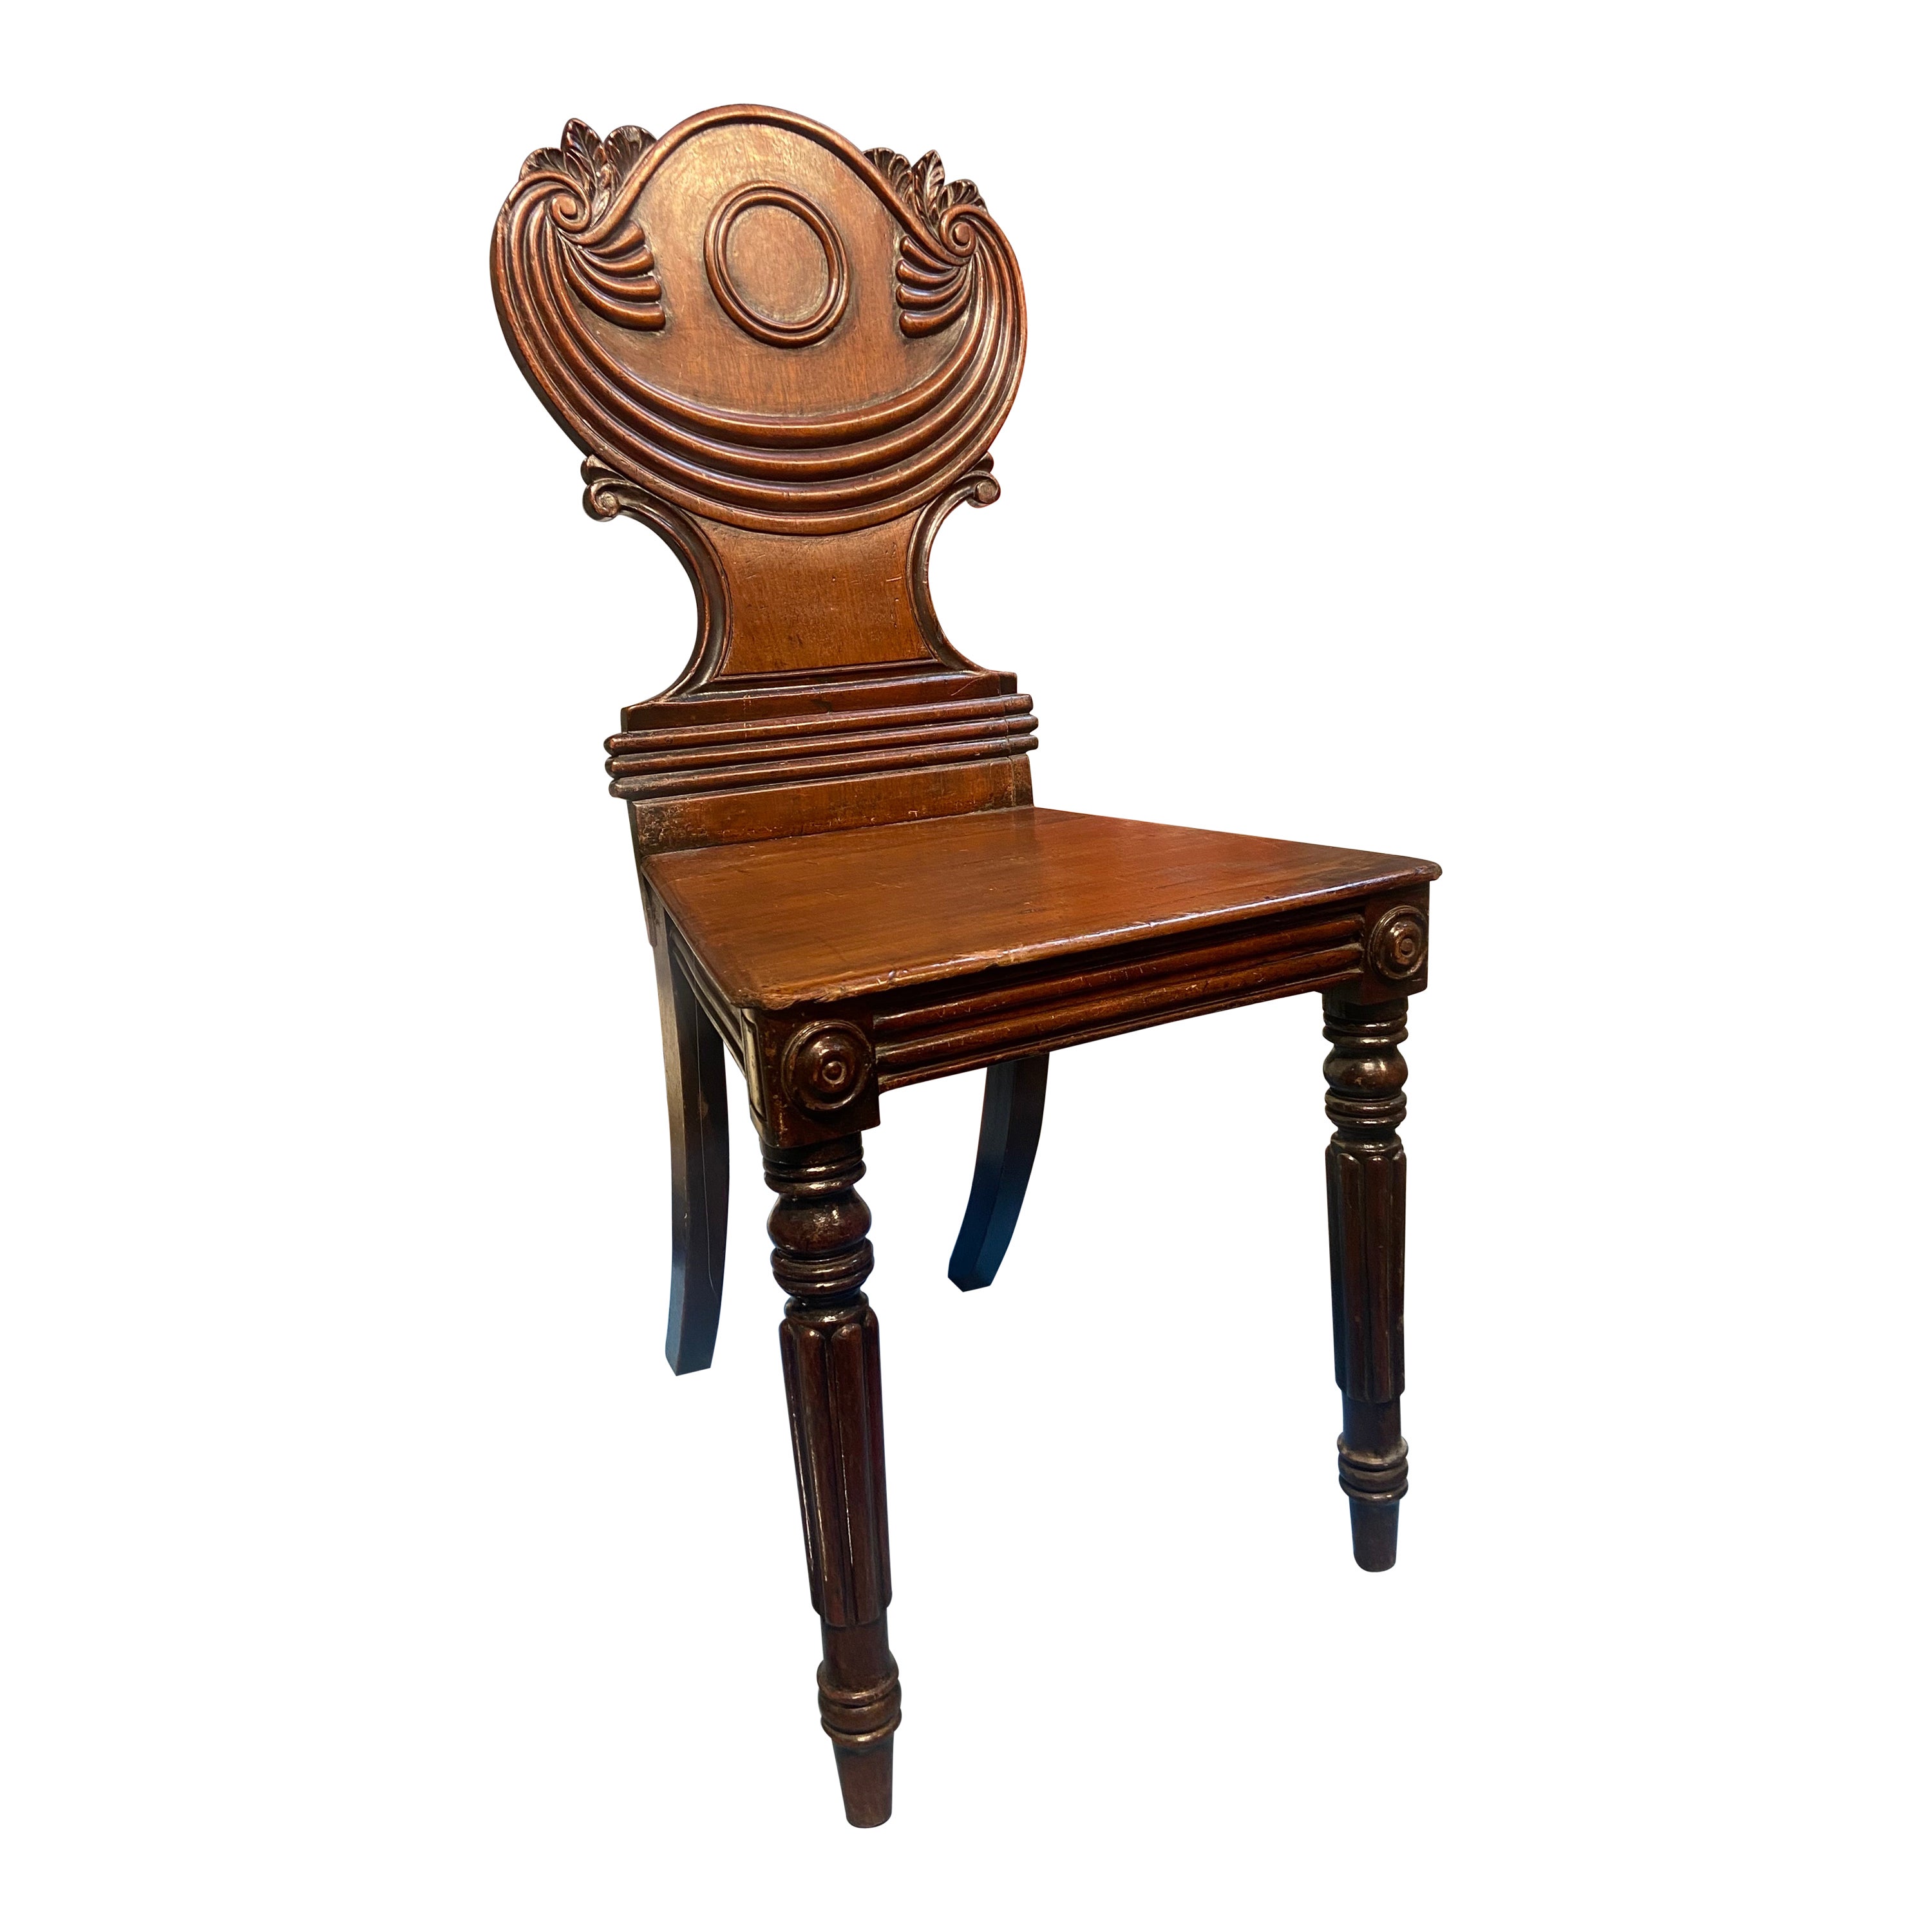 Viktorianischer Mahagoni-Stuhl des 19. Jahrhunderts mit ovaler handgeschnitzter Rückenlehne